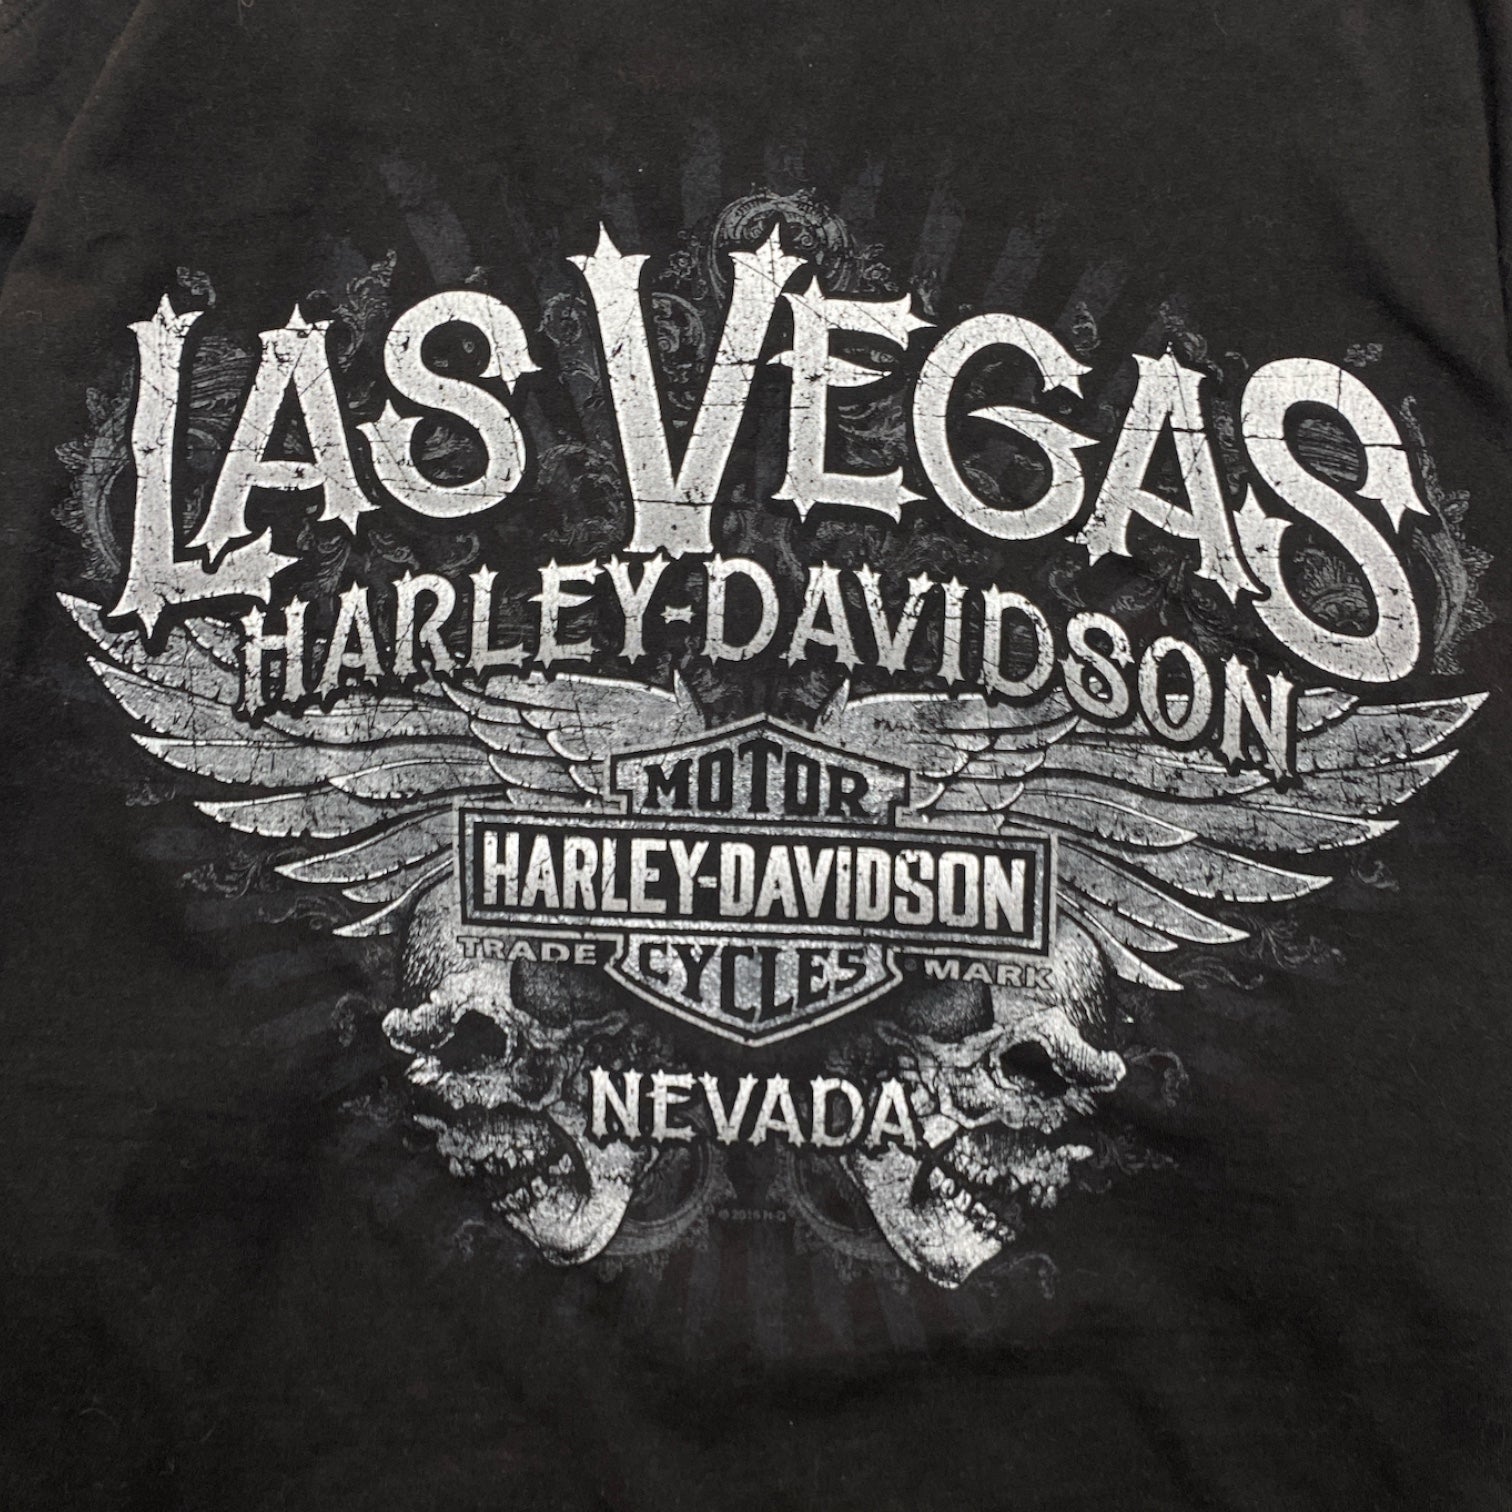 HARLEY-DAVIDSON CYCLES Las Vegas NEVADA Tee skull wings